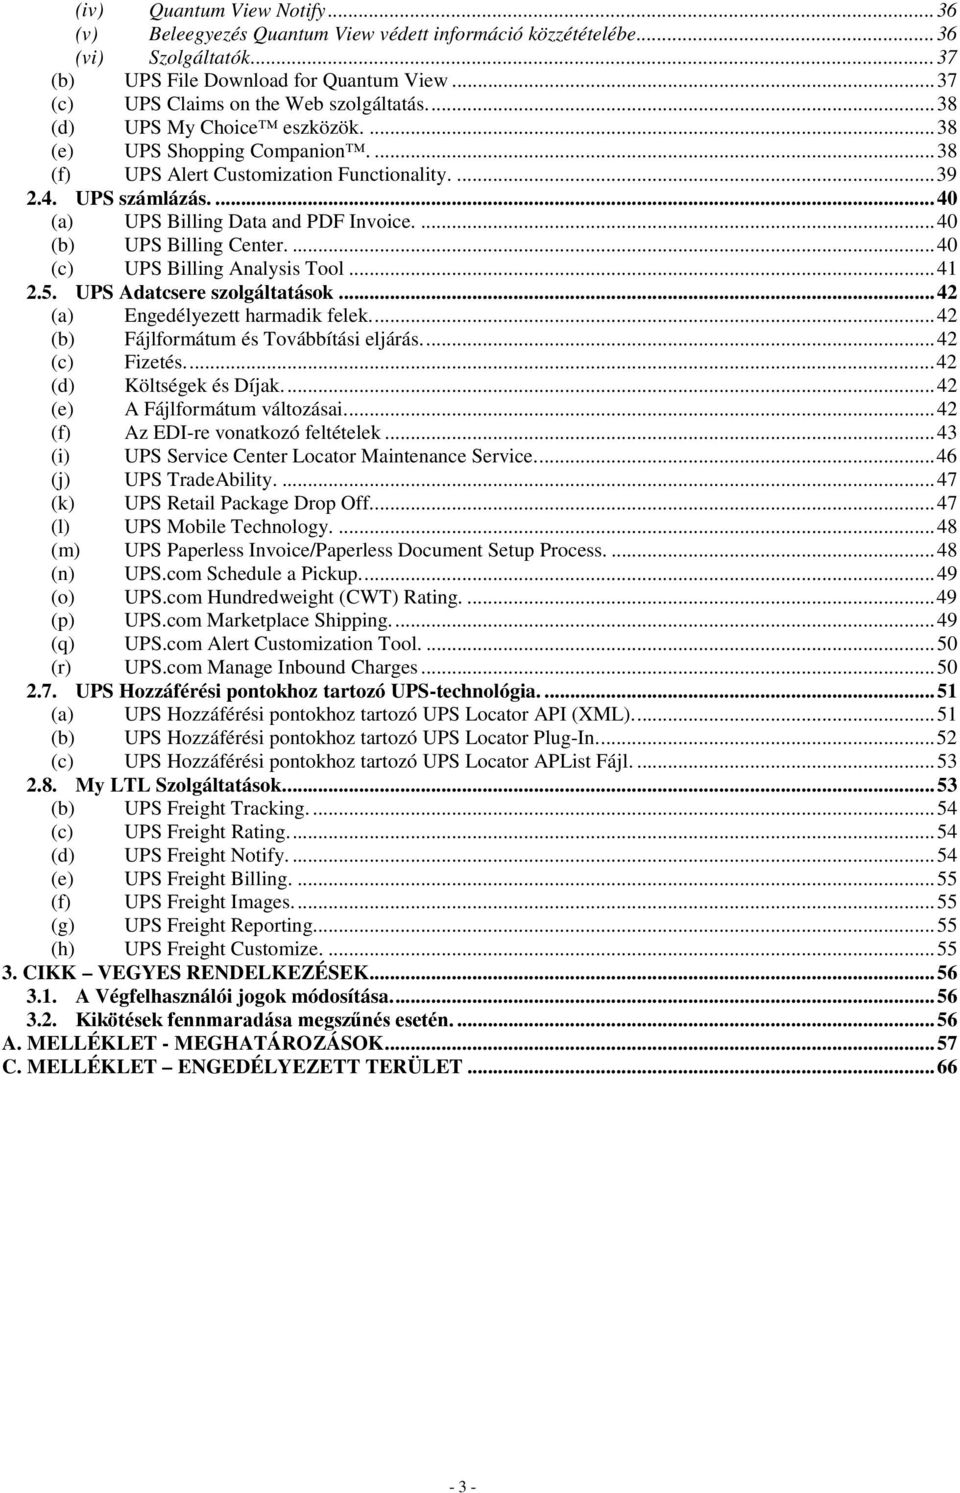 ... 40 (a) UPS Billing Data and PDF Invoice.... 40 (b) UPS Billing Center.... 40 (c) UPS Billing Analysis Tool... 41 2.5. UPS Adatcsere szolgáltatások... 42 (a) Engedélyezett harmadik felek.